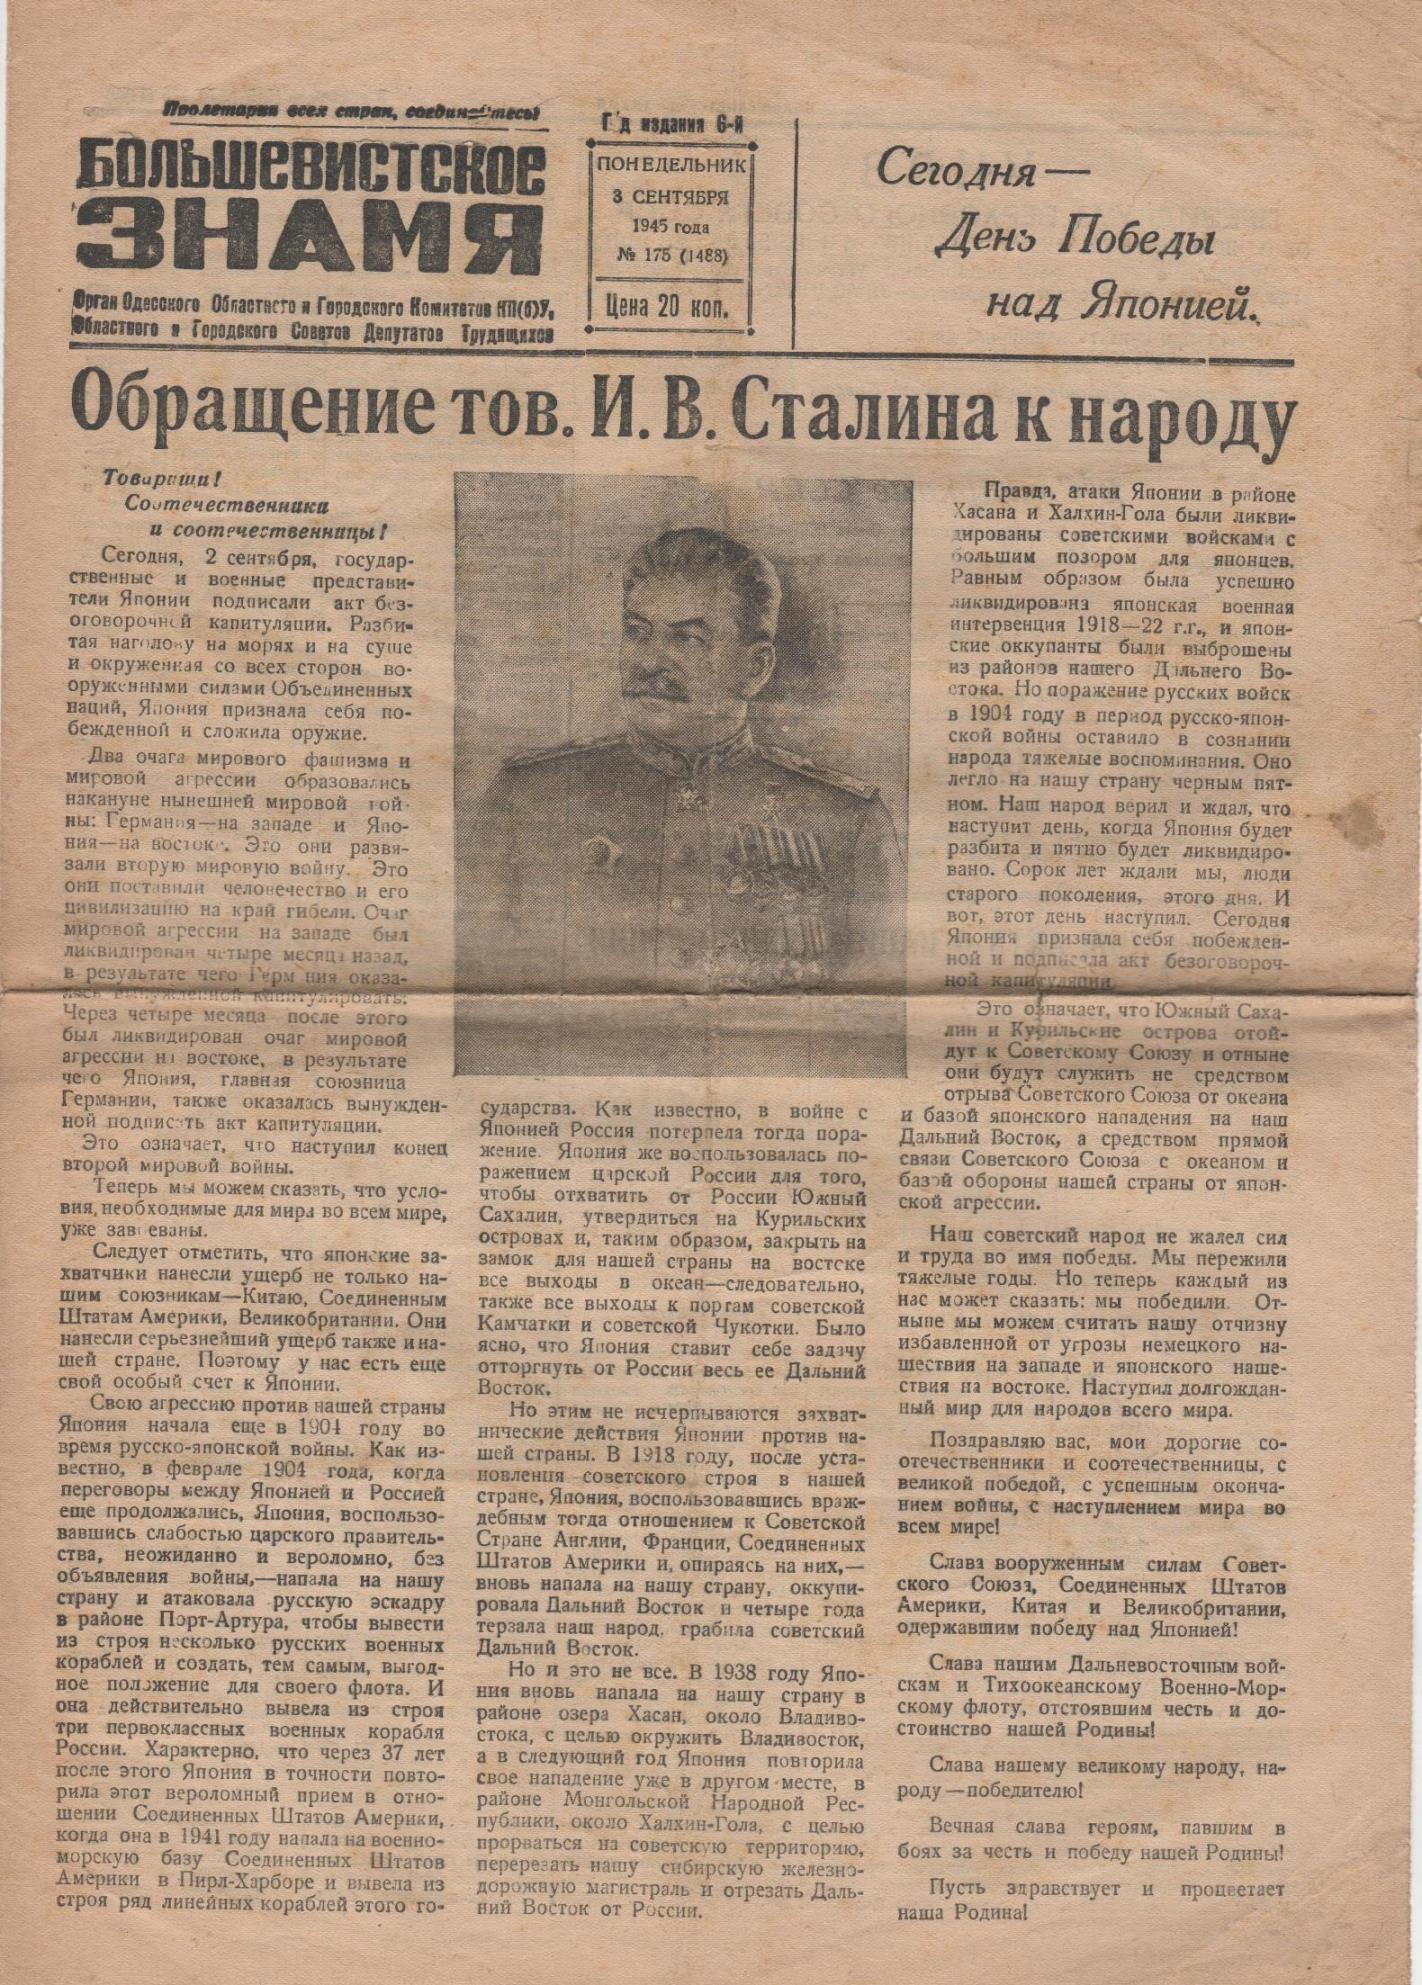 Газета "Большевистское знамя" № 175 (1488), від понеділока 3 вересня 1945 року